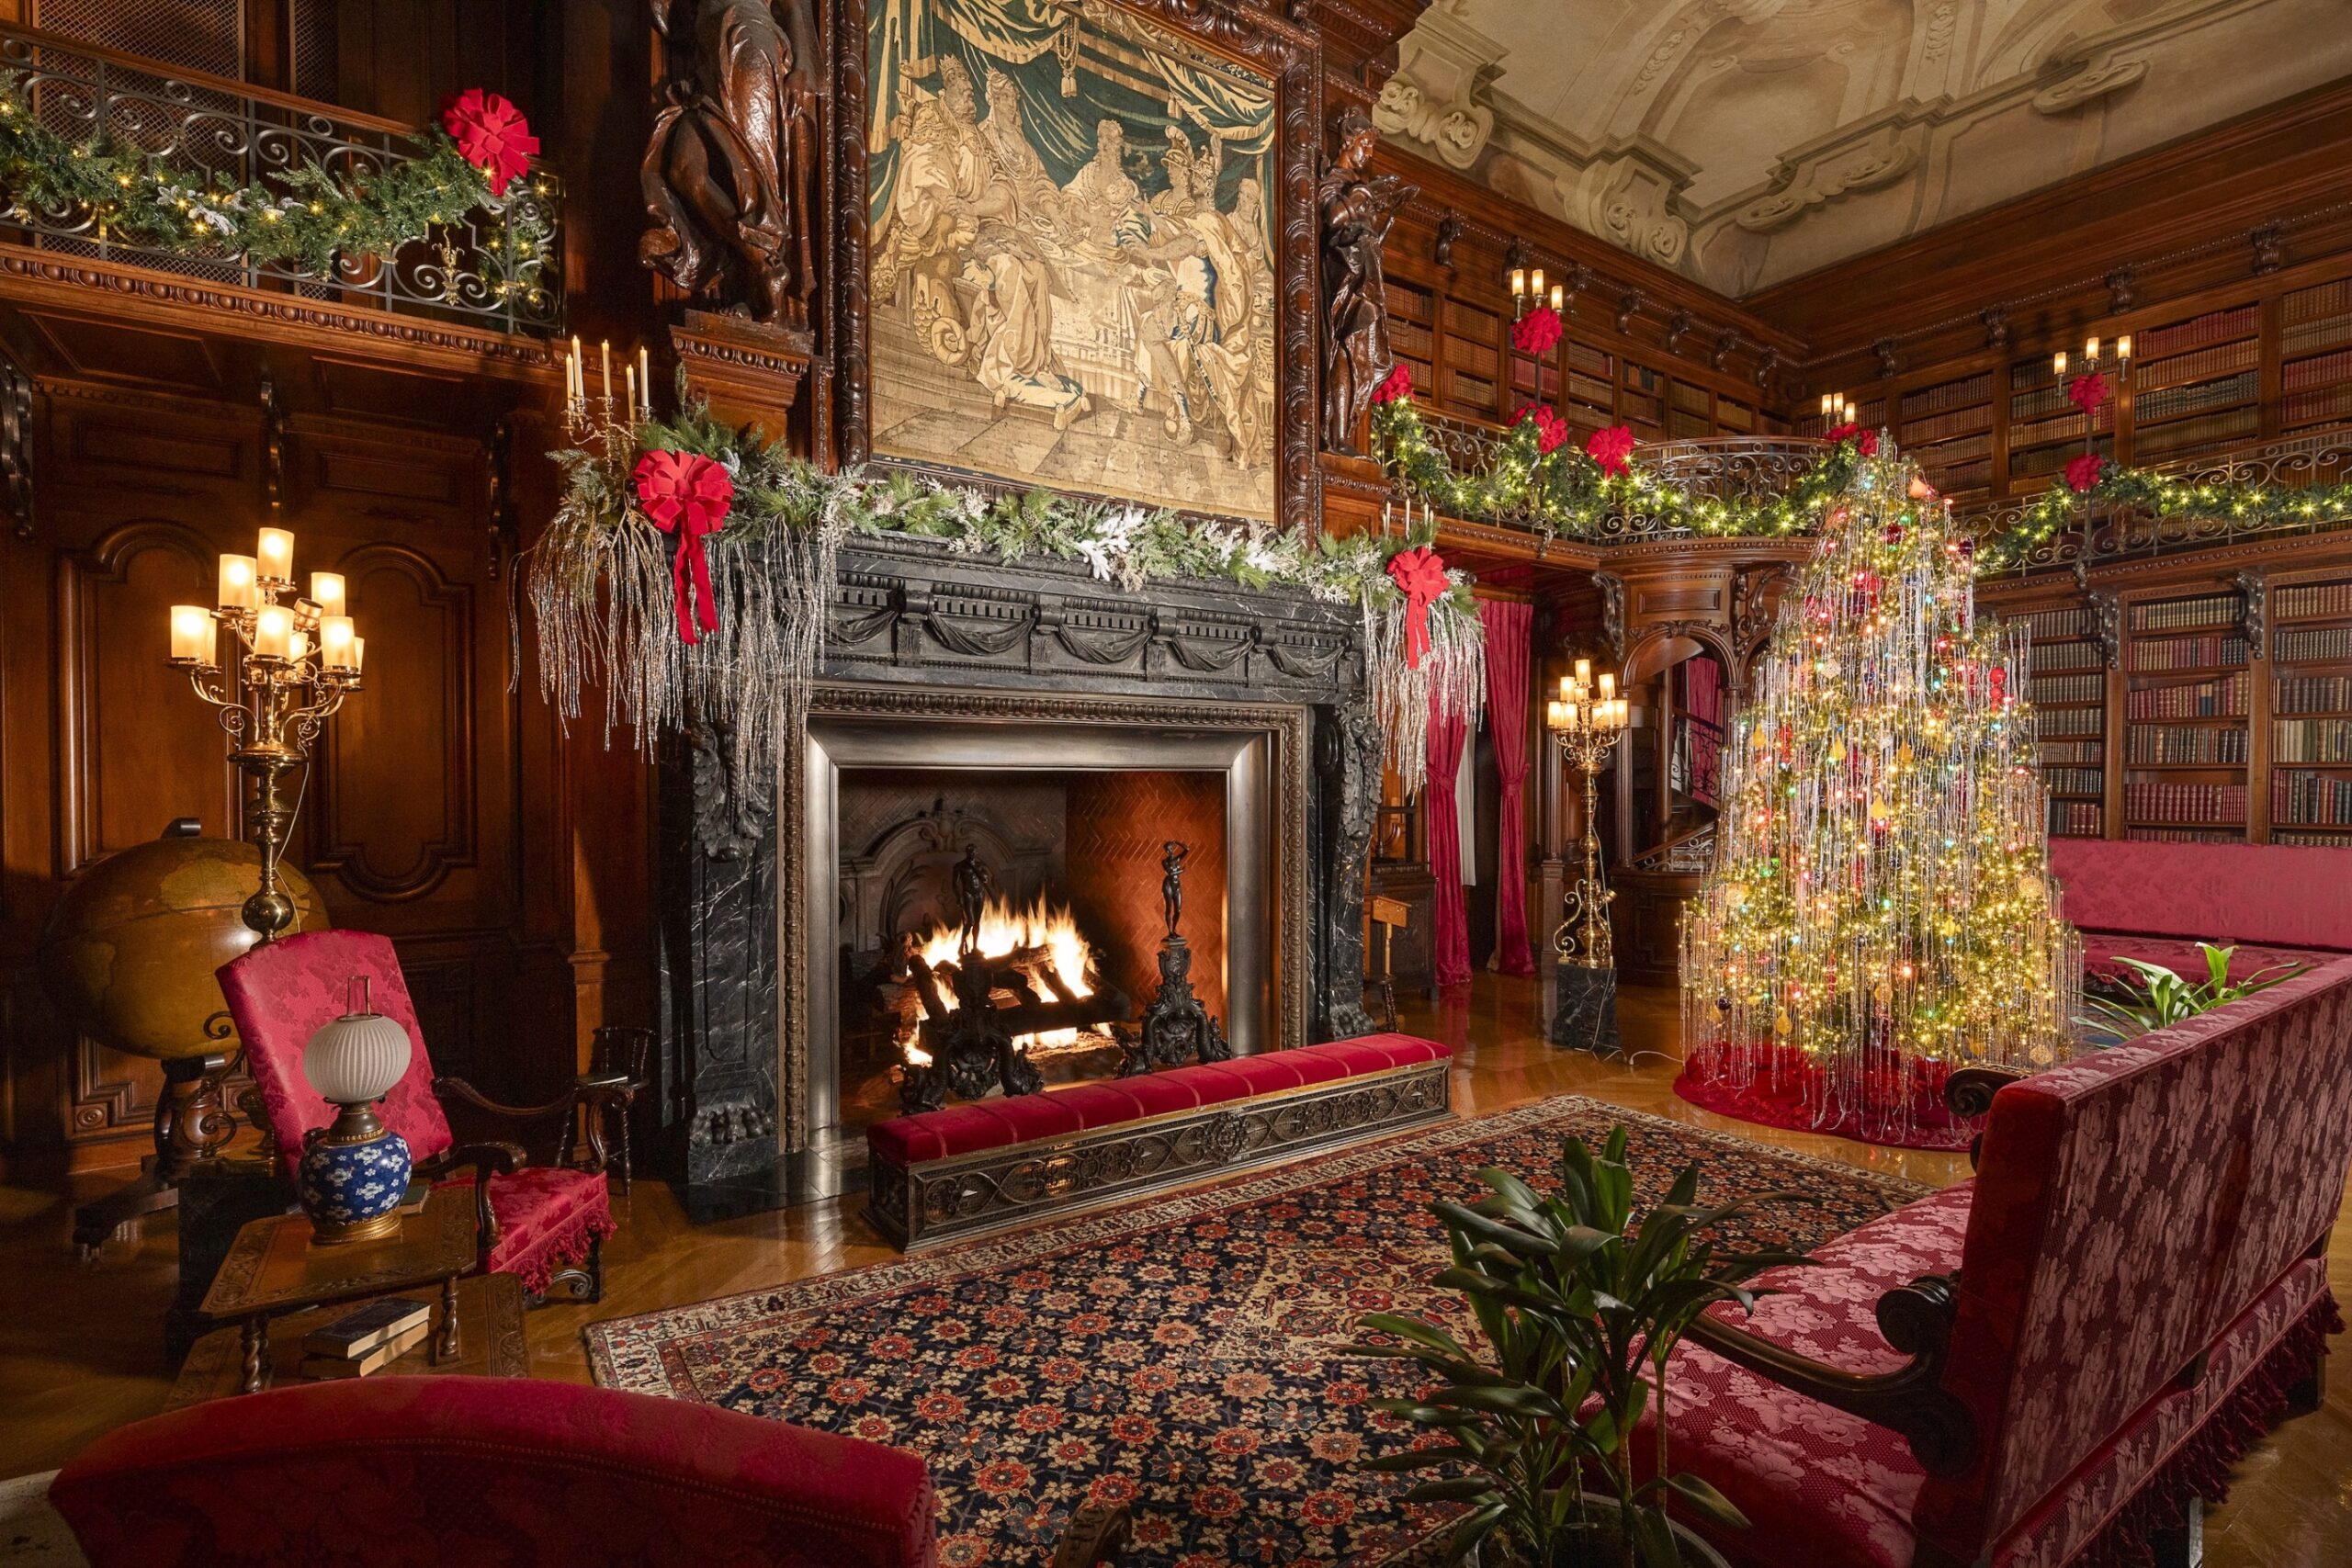 biltmore estate christmas decorations Bulan 5 Five Christmas Decorating Tips From the Biltmore – Garden & Gun